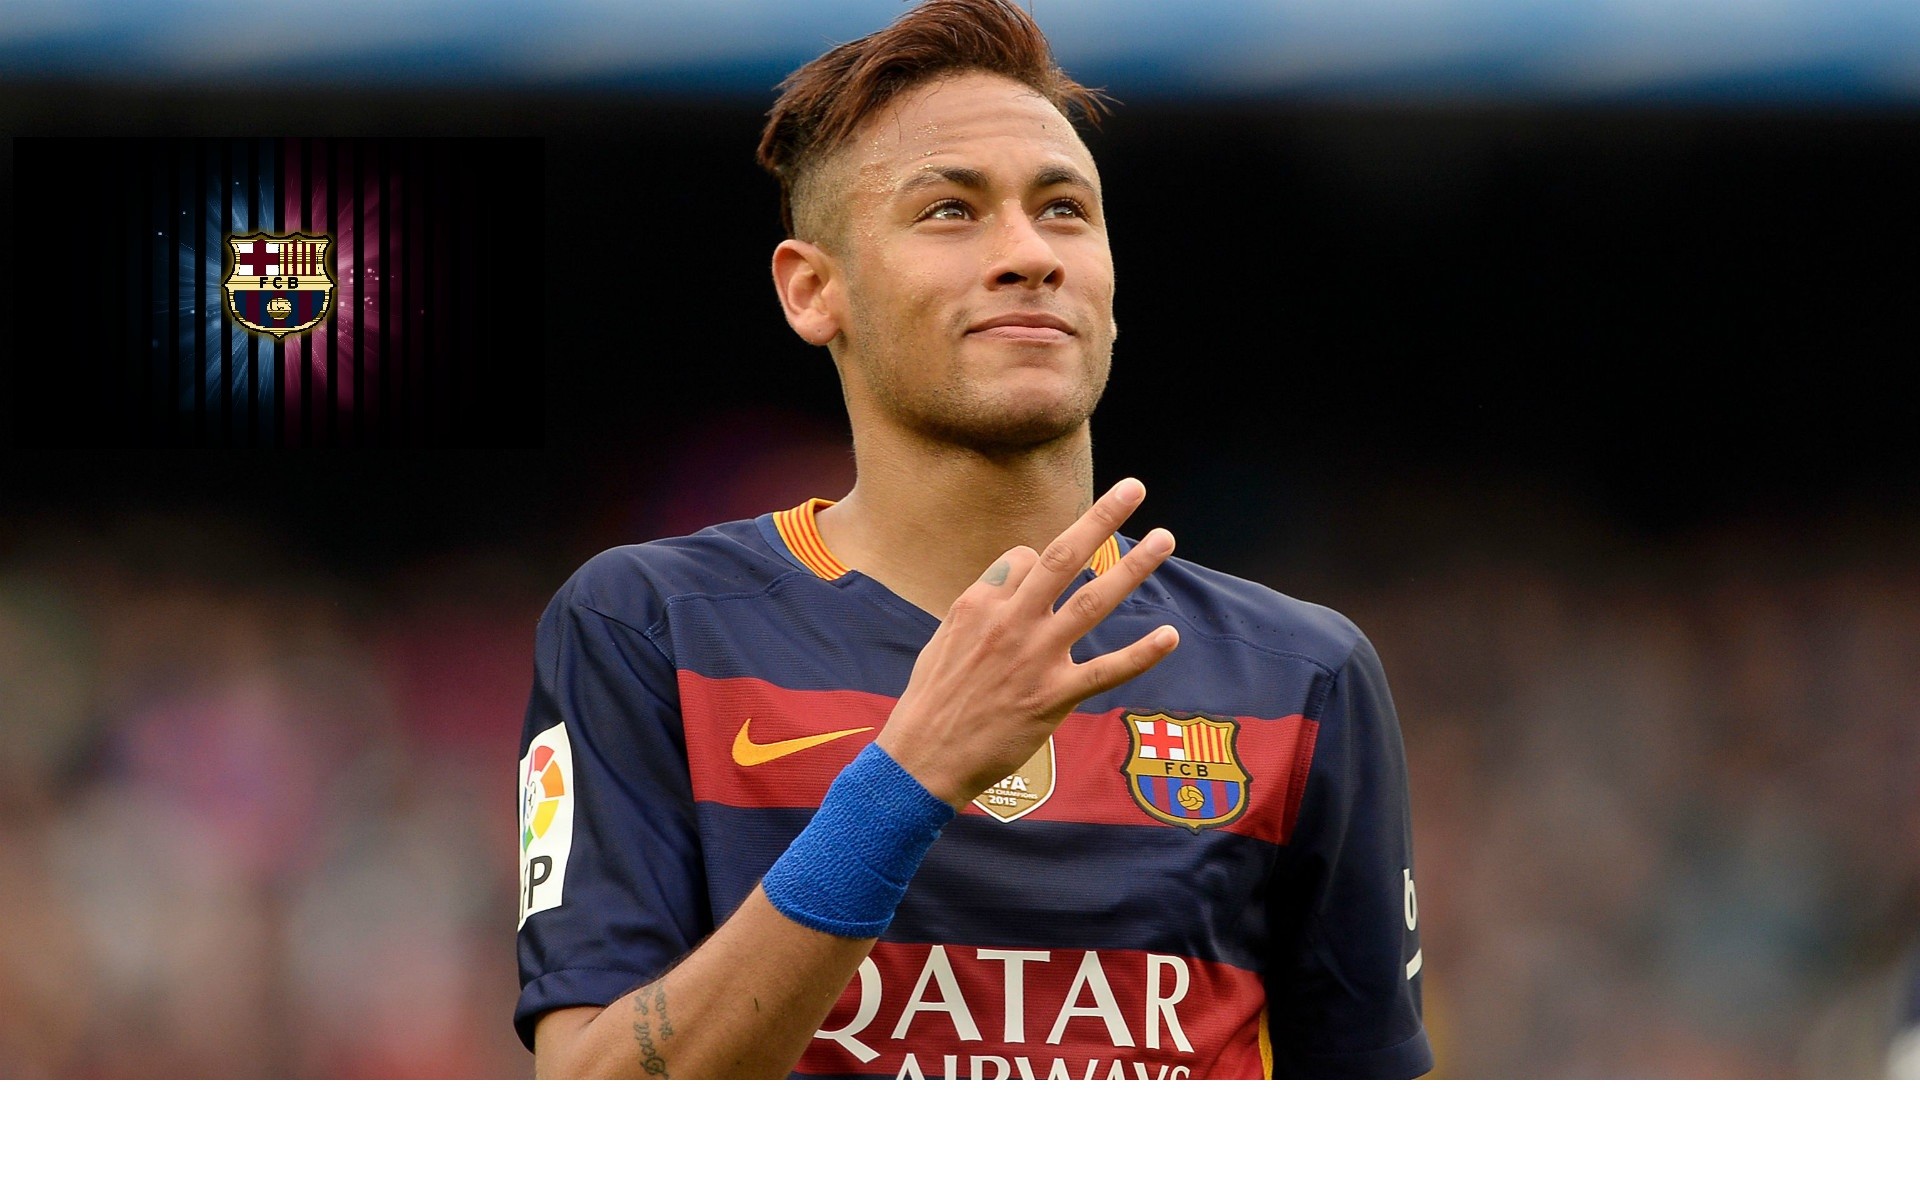 Neymar Barca Hd Wallpaper - Neymar En El Barcelona - HD Wallpaper 